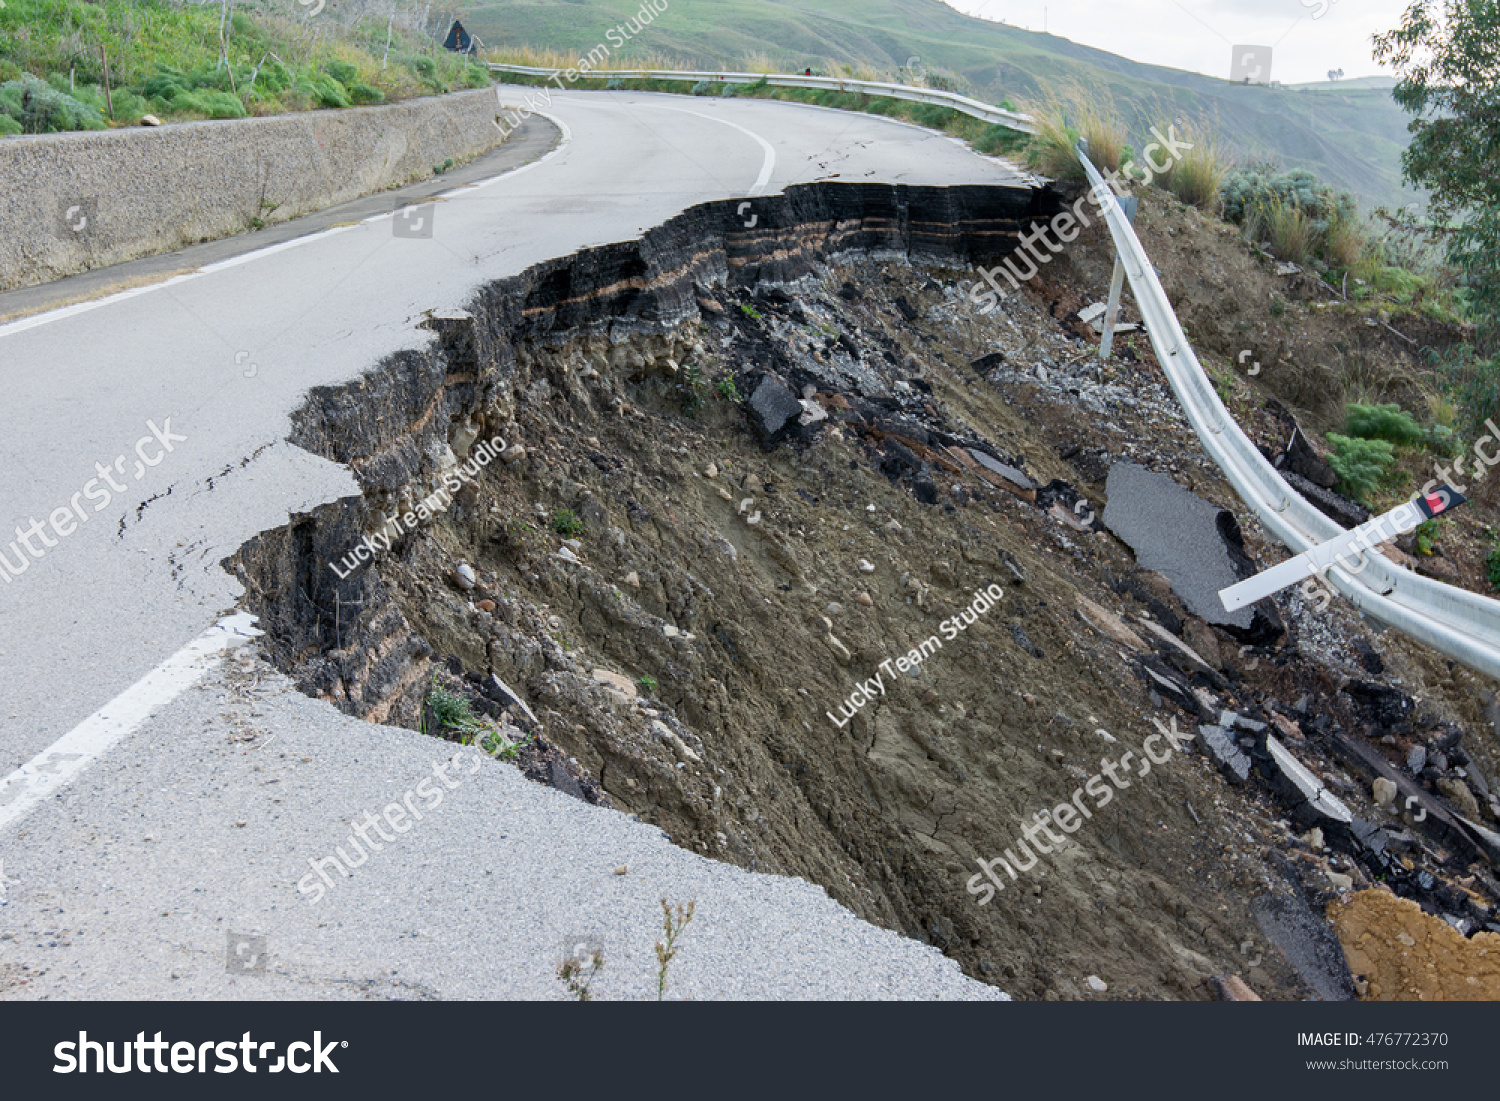 Landslide on a national road in Sicily #476772370